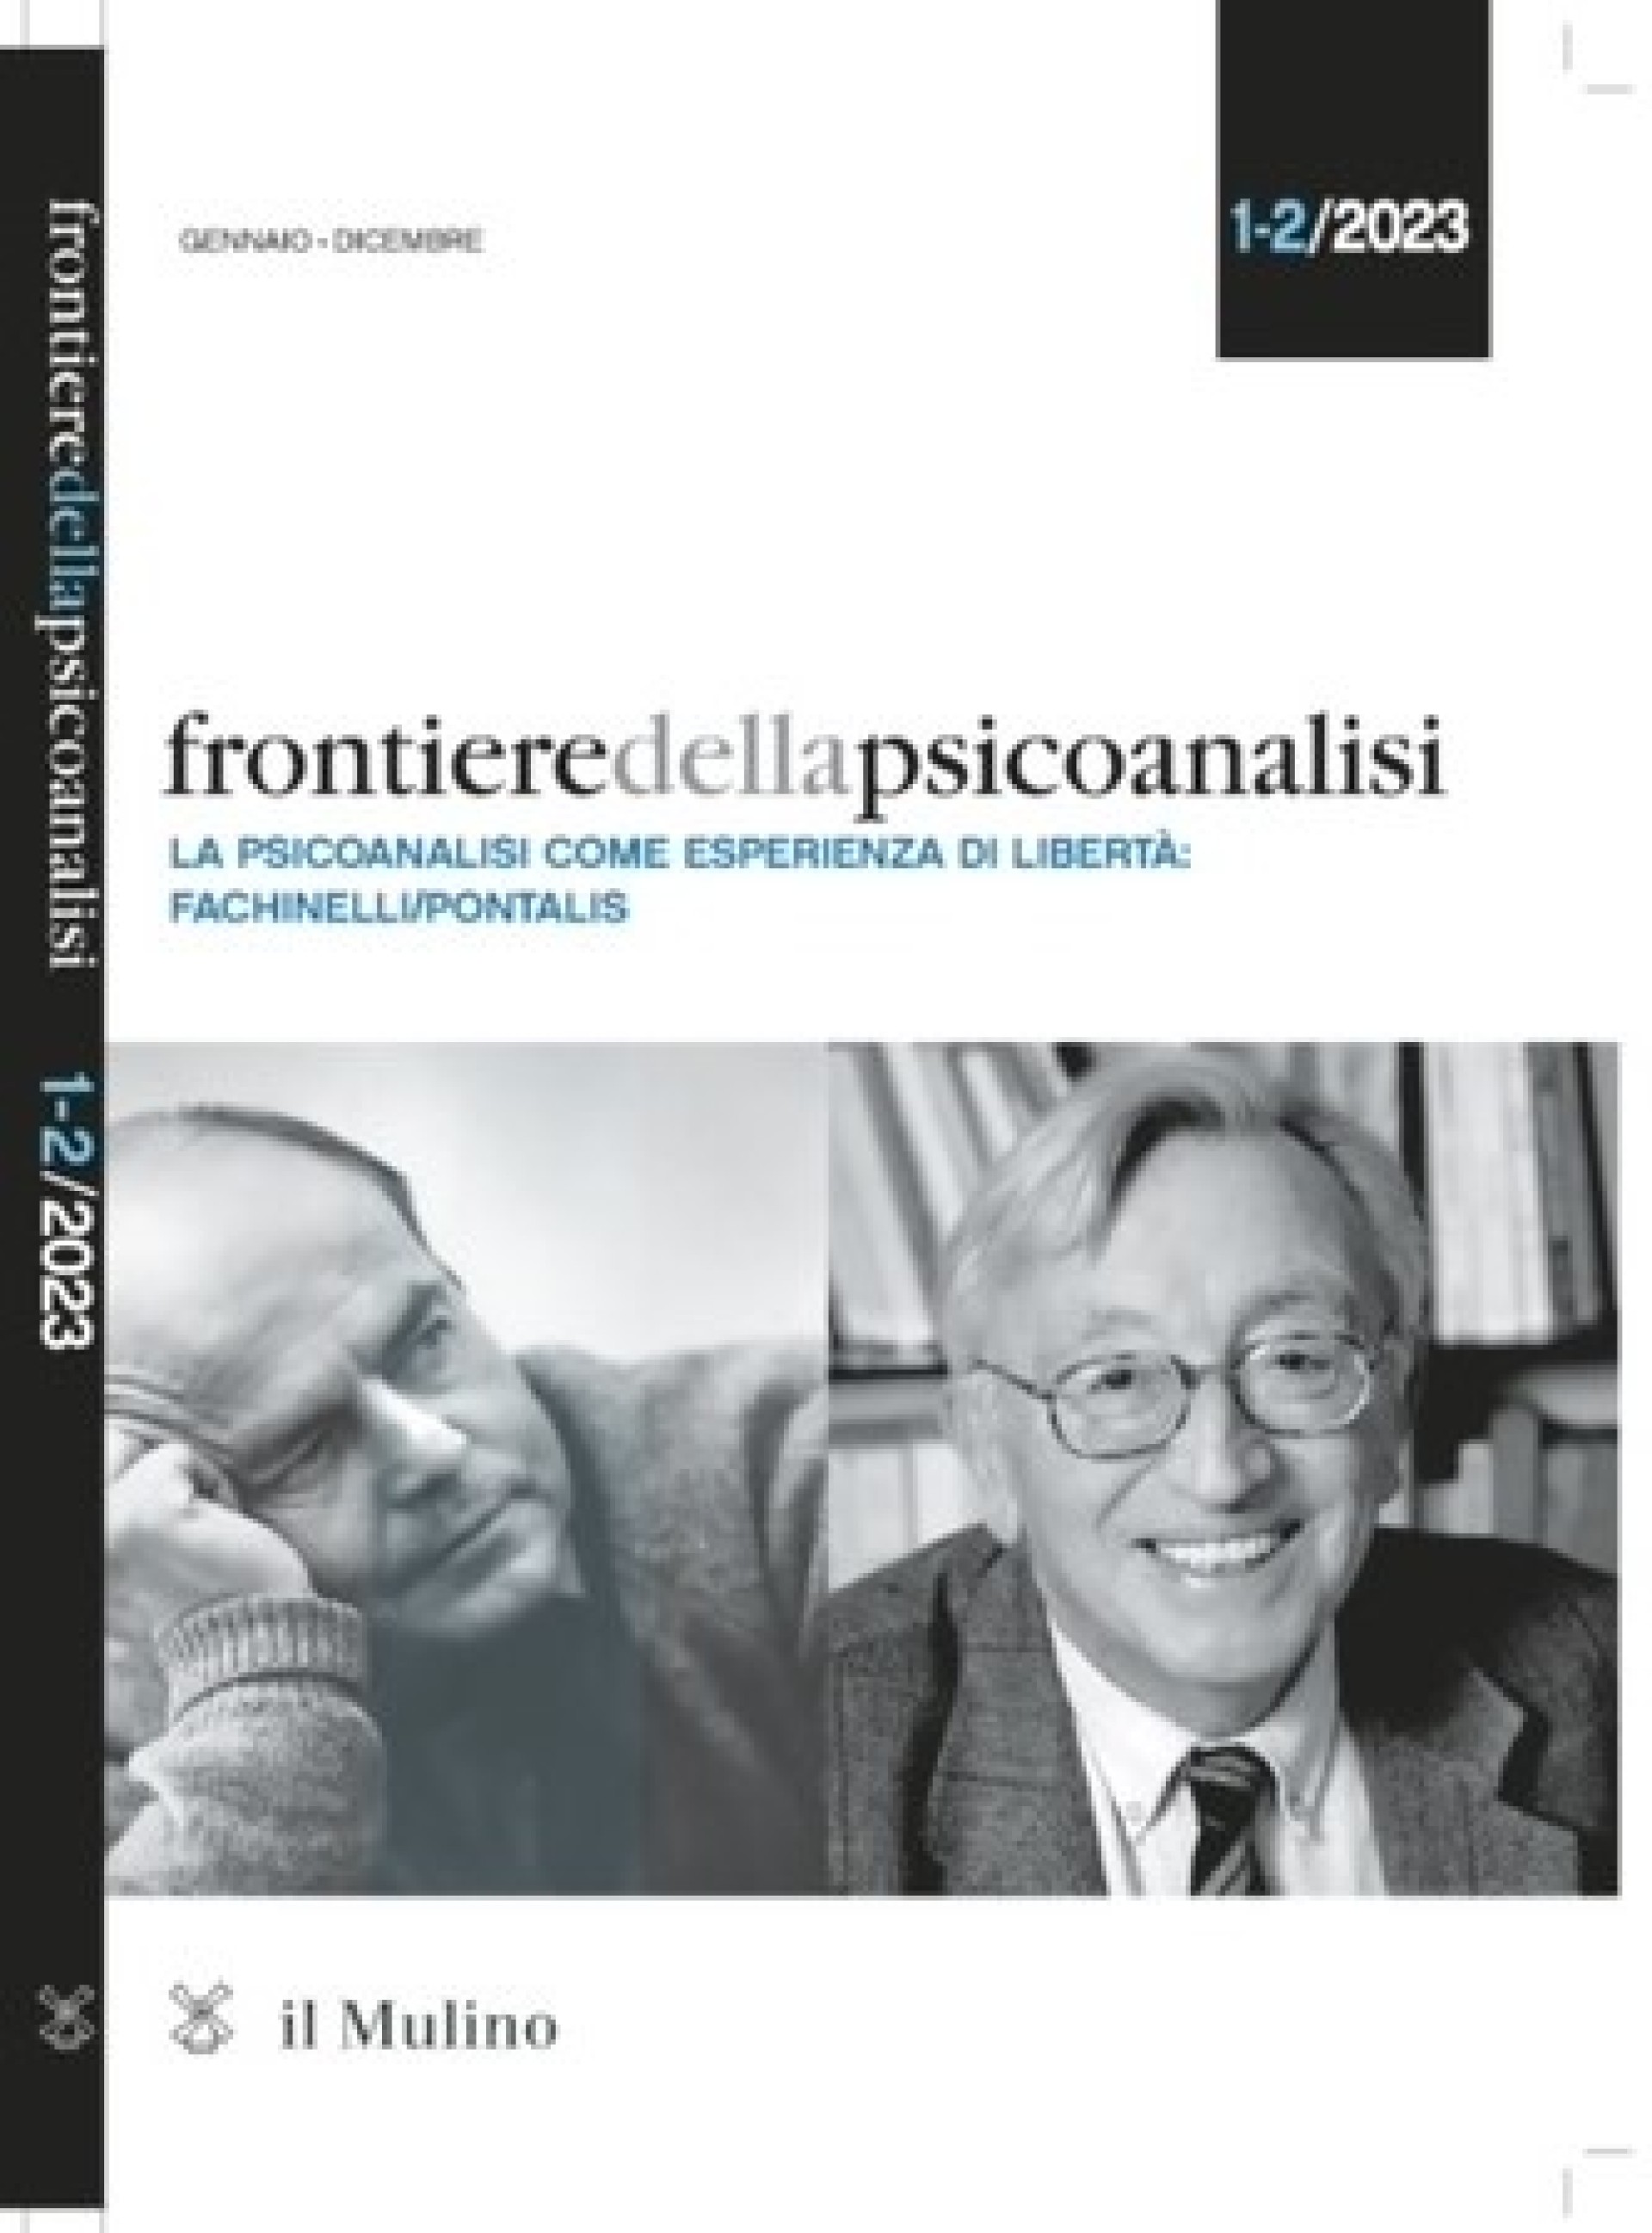 Frontiere della Psicoanalisi : La psicoanalisi come esercizio di libertà: Fachinelli/Pontalis